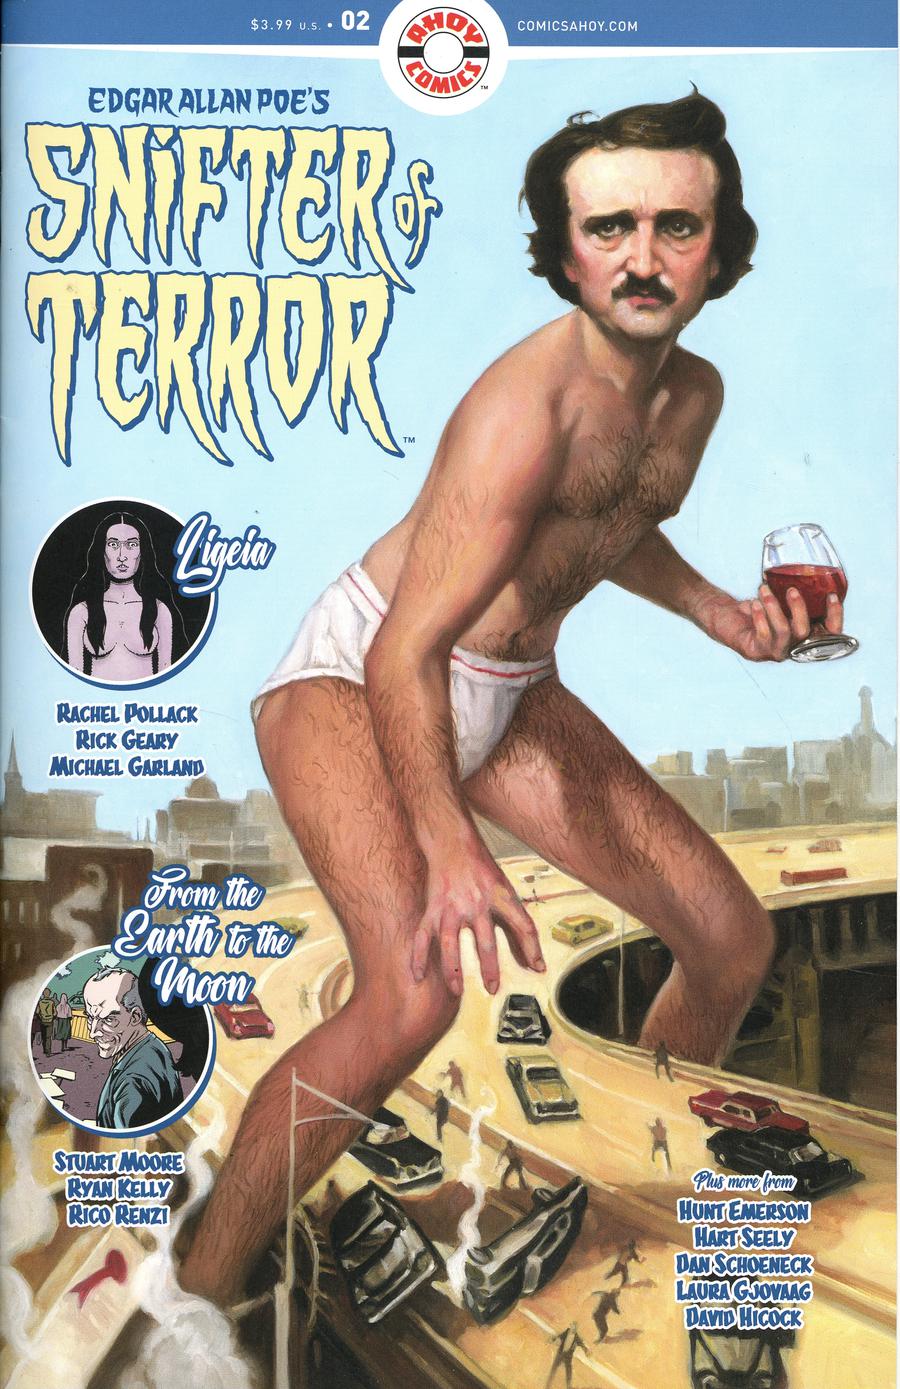 Edgar Allan Poes Snifter Of Terror #2